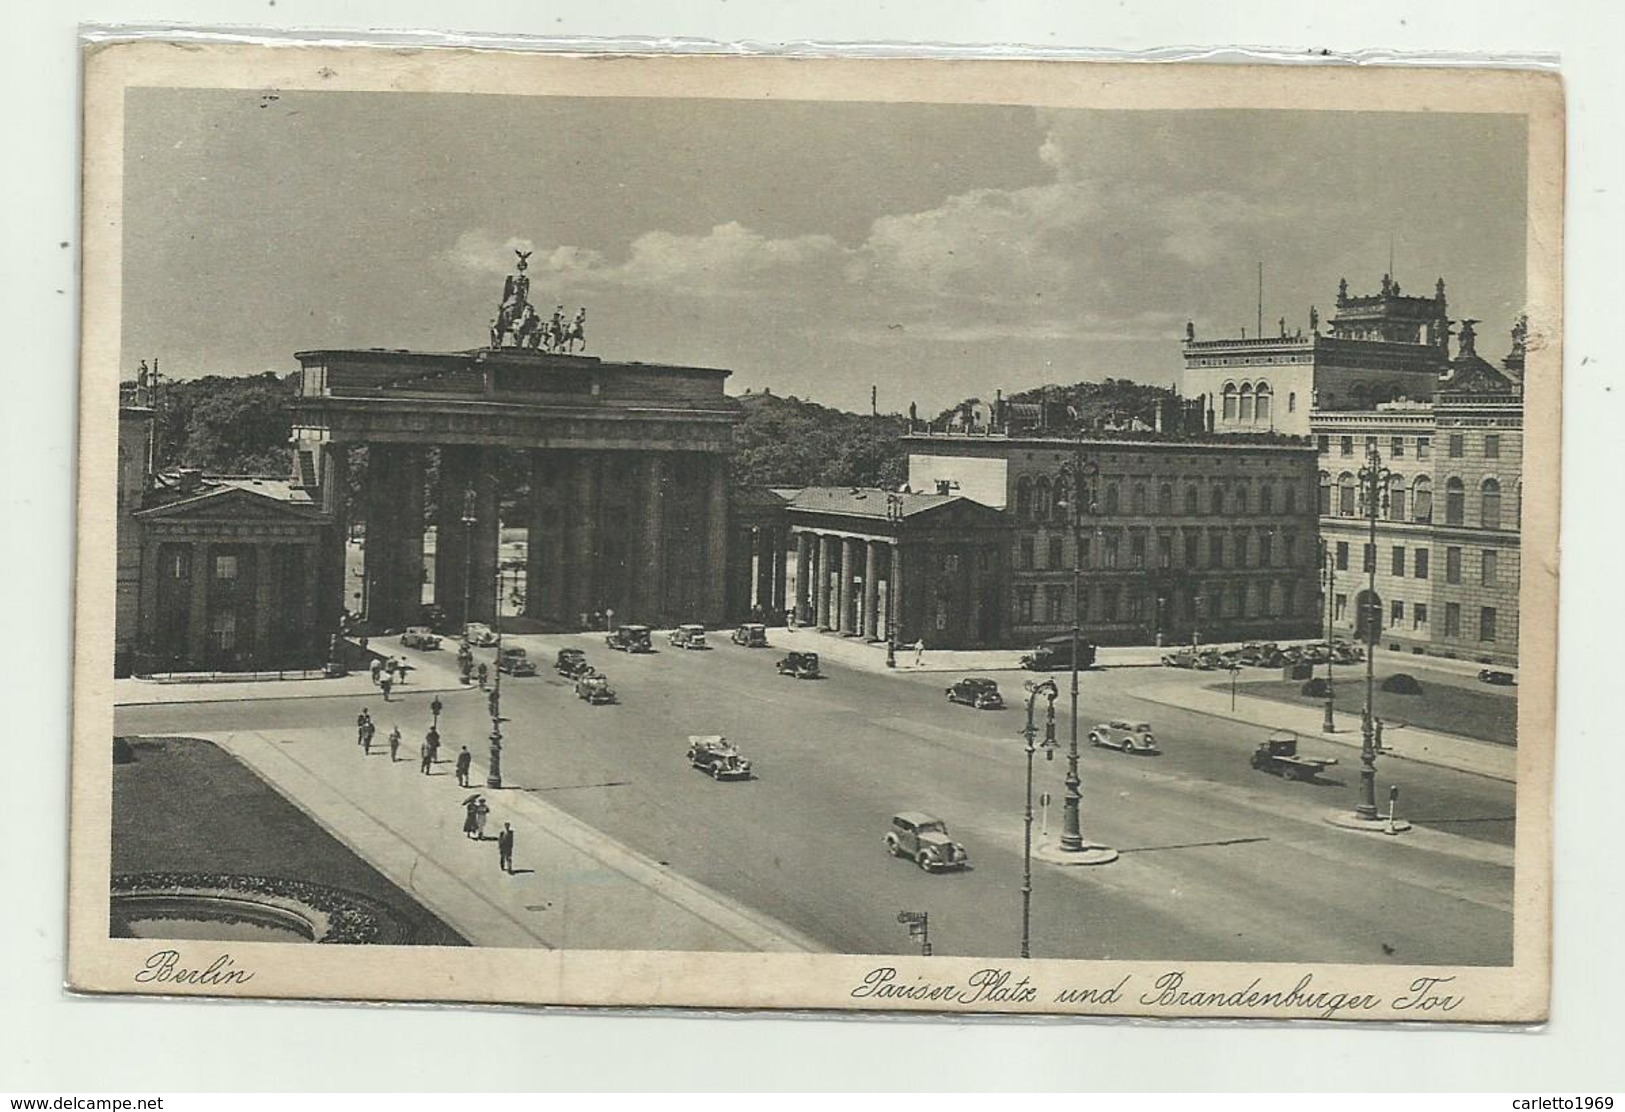 BERLIN - PARISER PLATZ UND BRANDENBURGO TOR 1939 - VIAGGIATA    FP - Brandenburger Tor